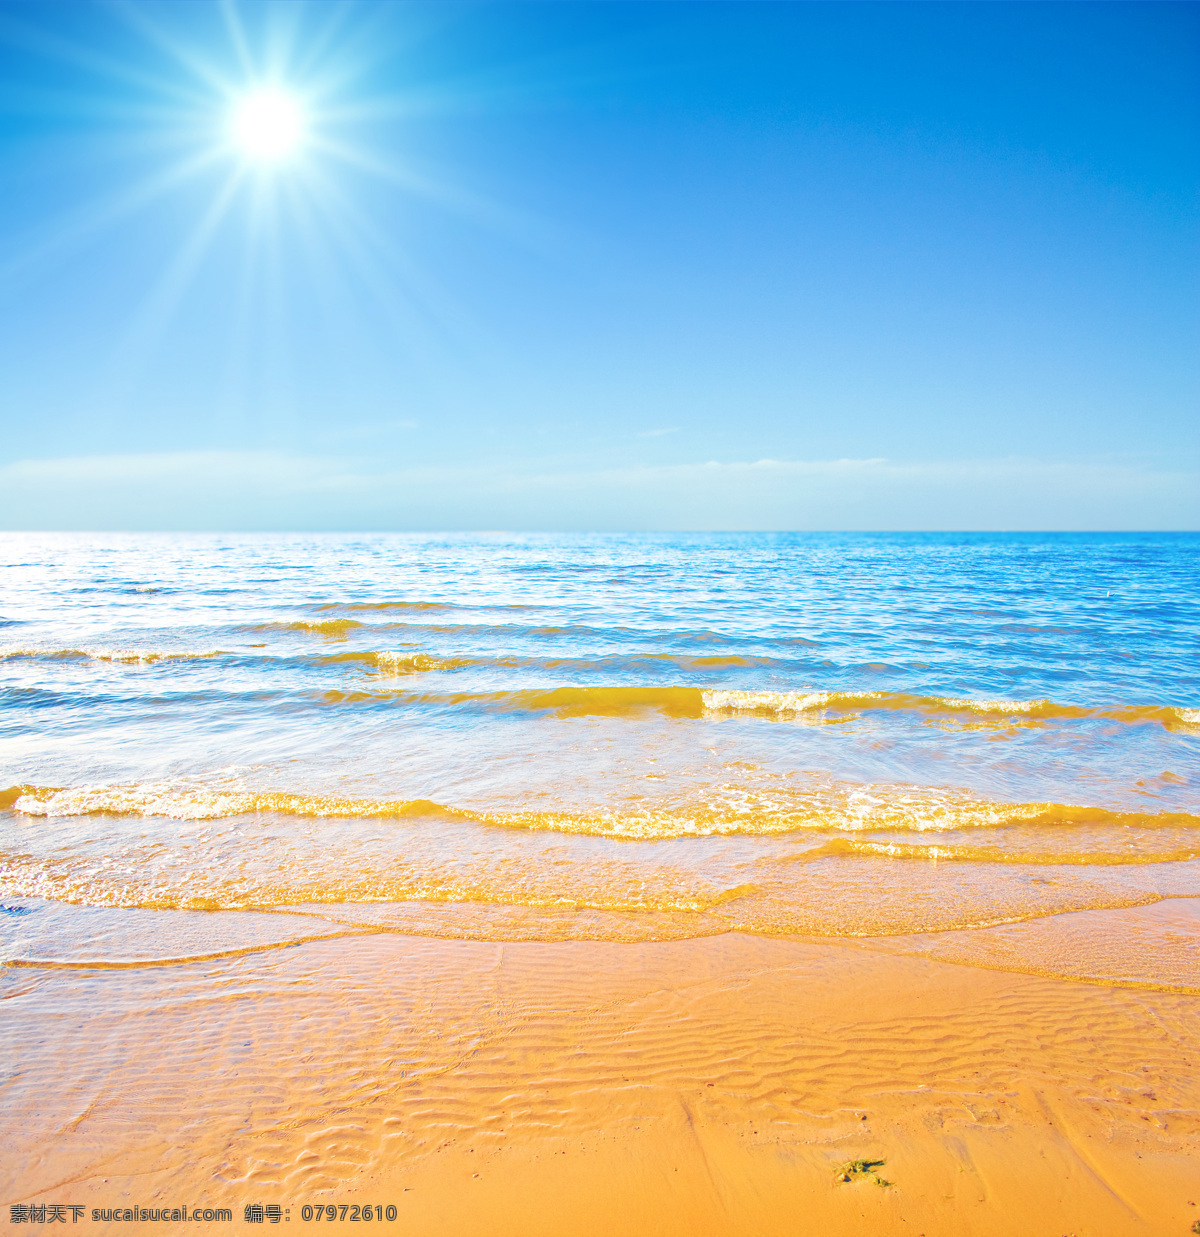 海边沙滩风光 大海 海水 沙滩 天空 阳光 自然风光 休闲旅游 热带风光 海洋海边 自然景观 青色 天蓝色